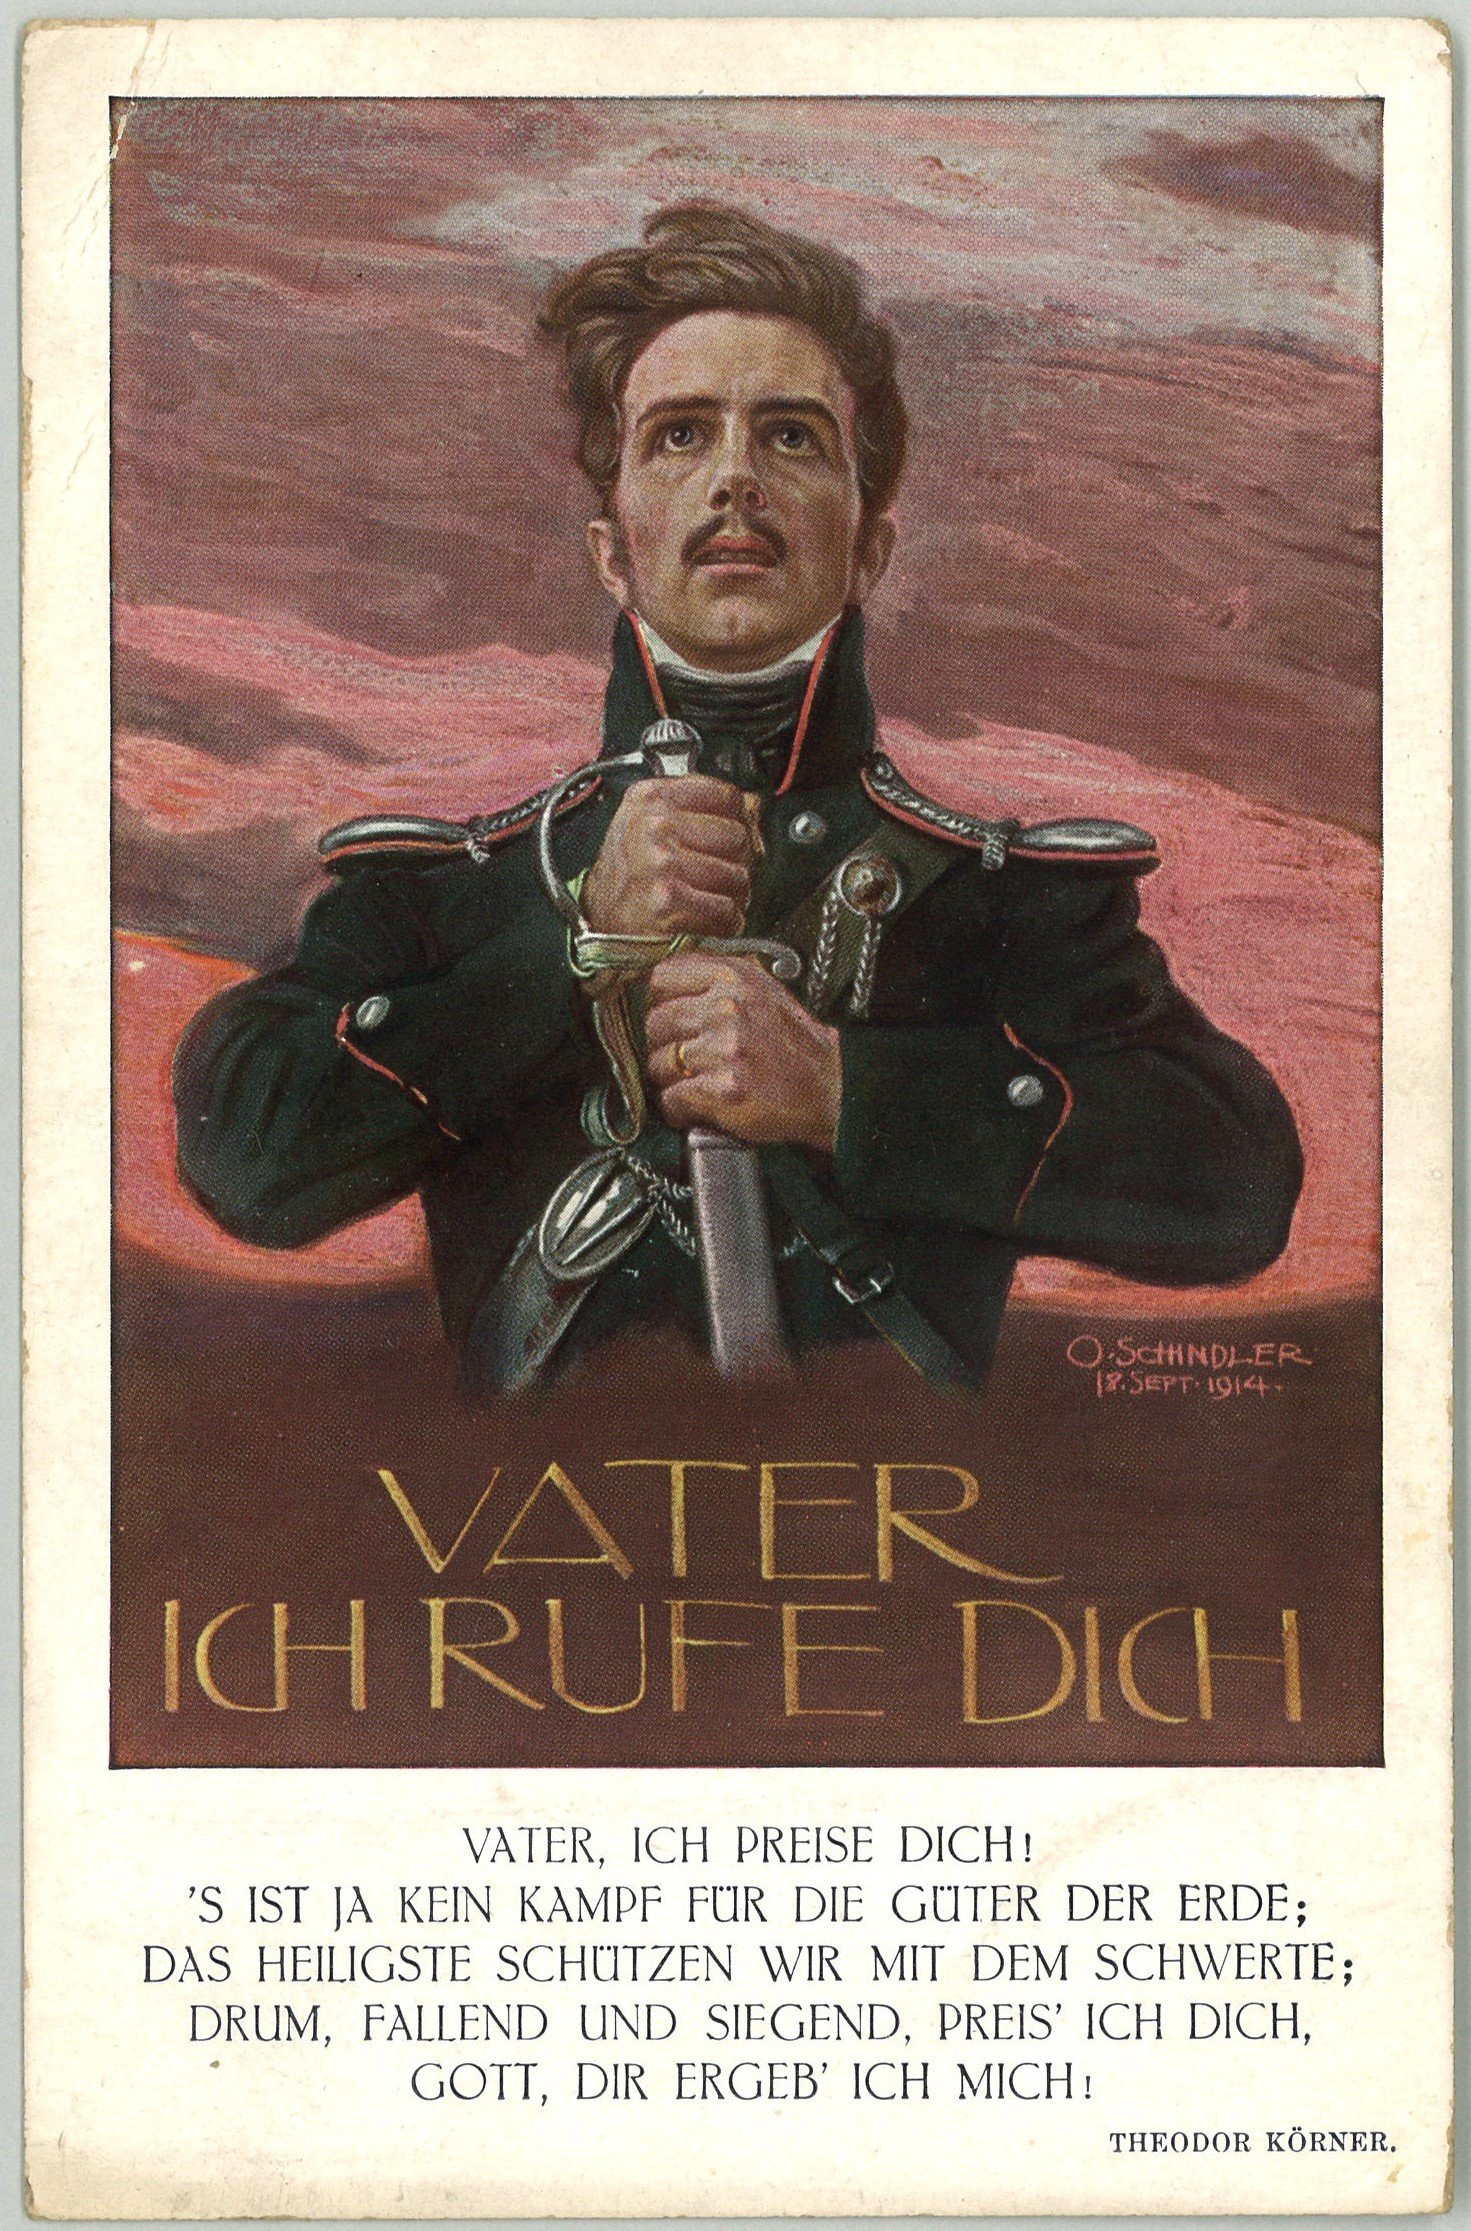 Künstlerkarte "Vater ich rufe Dich" (Theodor Körner) (Landesgeschichtliche Vereinigung für die Mark Brandenburg e.V., Archiv CC BY)